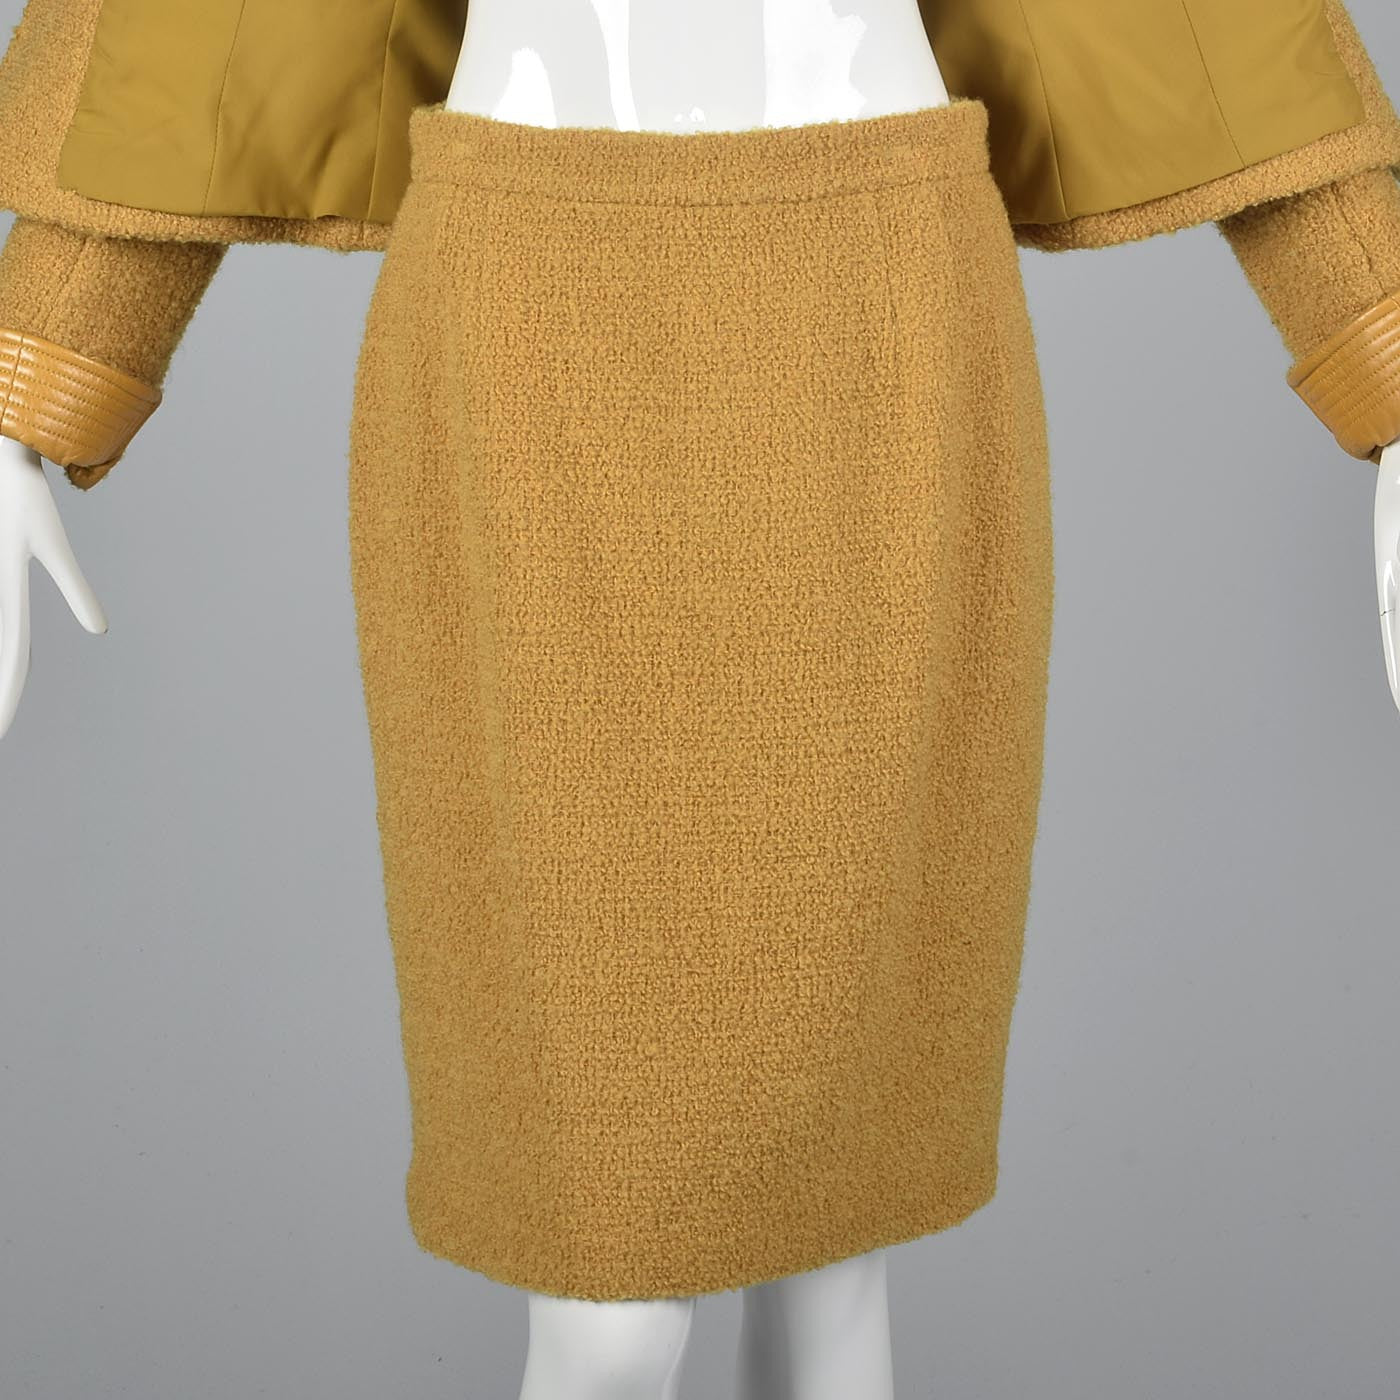 1990s Emanuel Ungaro Parallele Mustard Yellow Skirt Suit